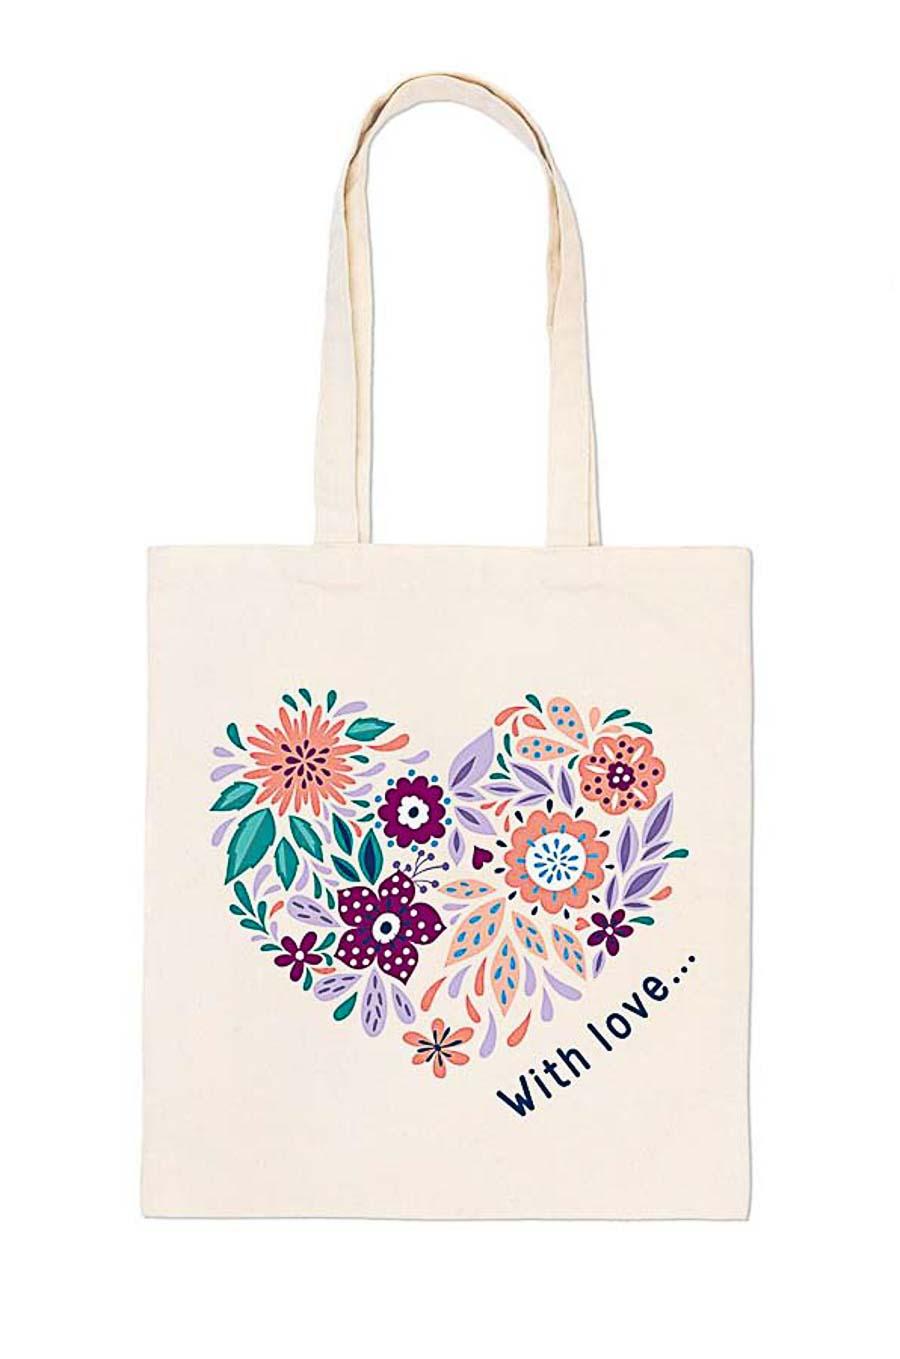 ФРЕЯ RWCB-001 Раскраска на сумке "Цветочное сердце" 40 х 35 см